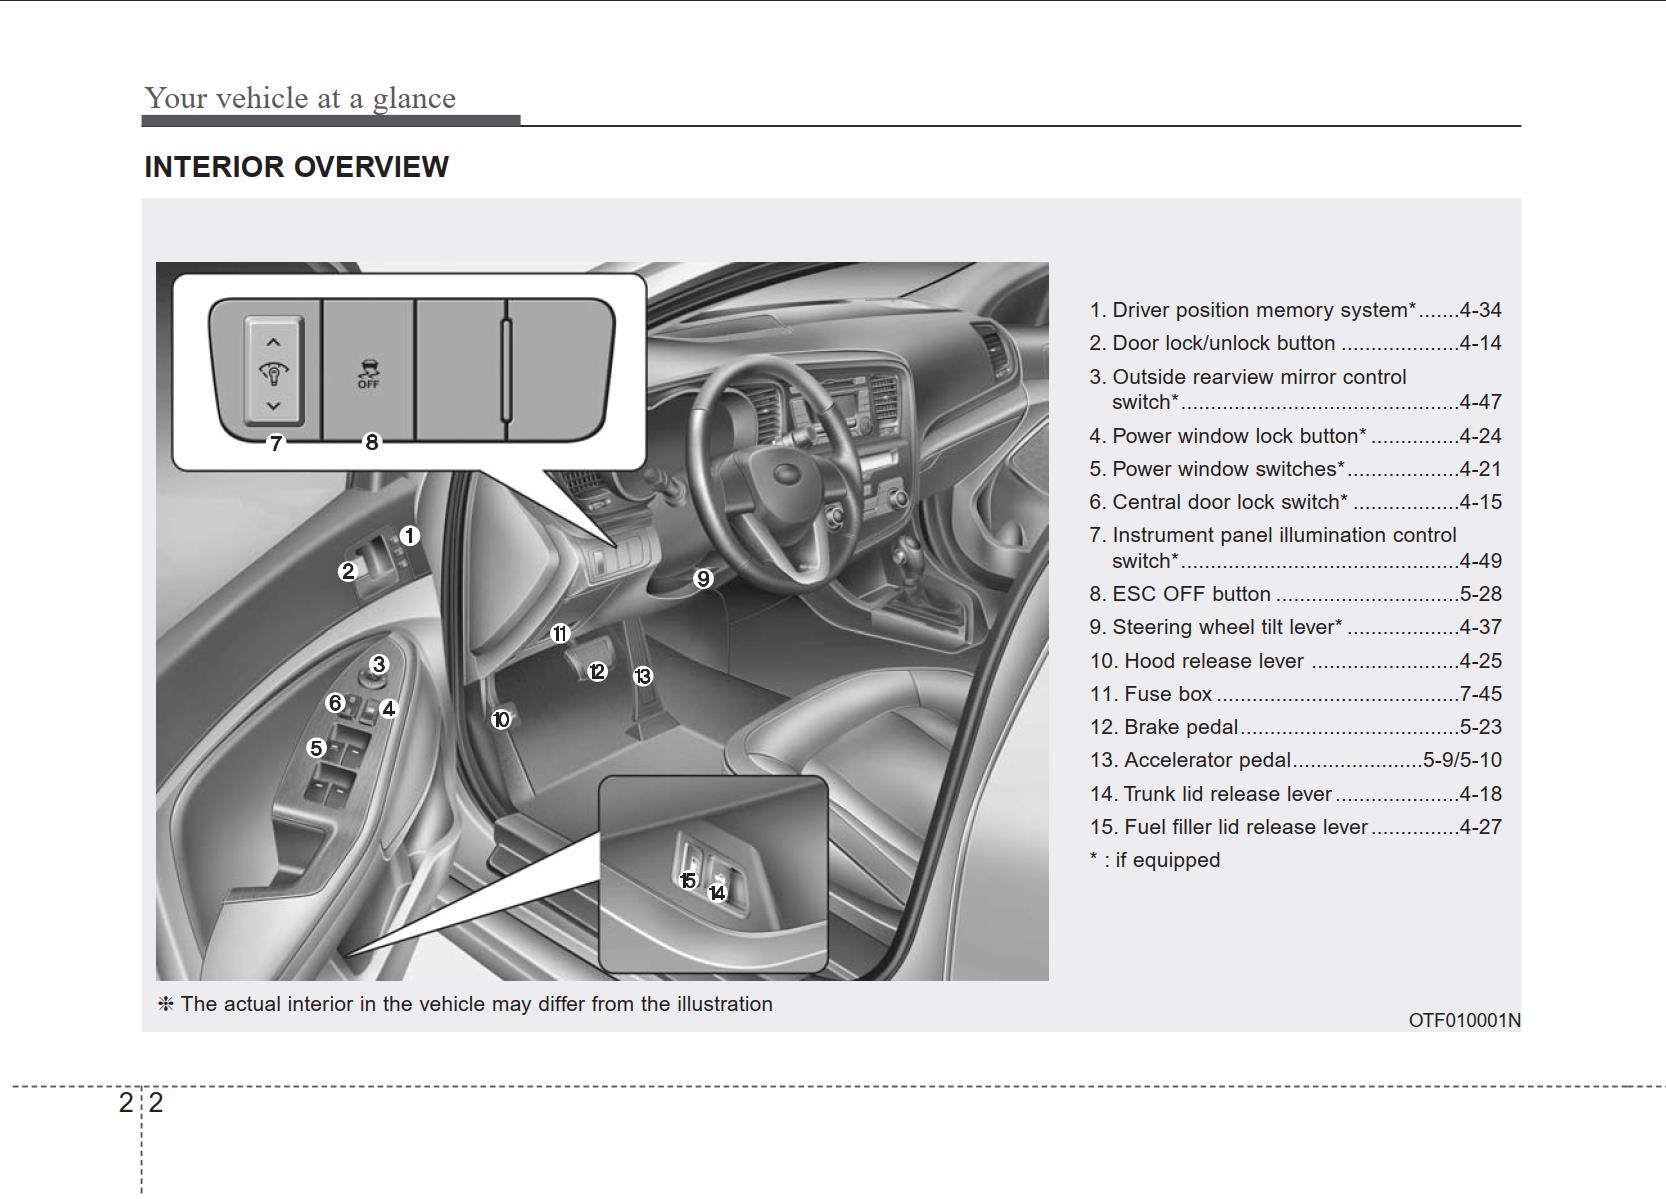 KIA Optima 2013 Owner's Manual – PDF Download